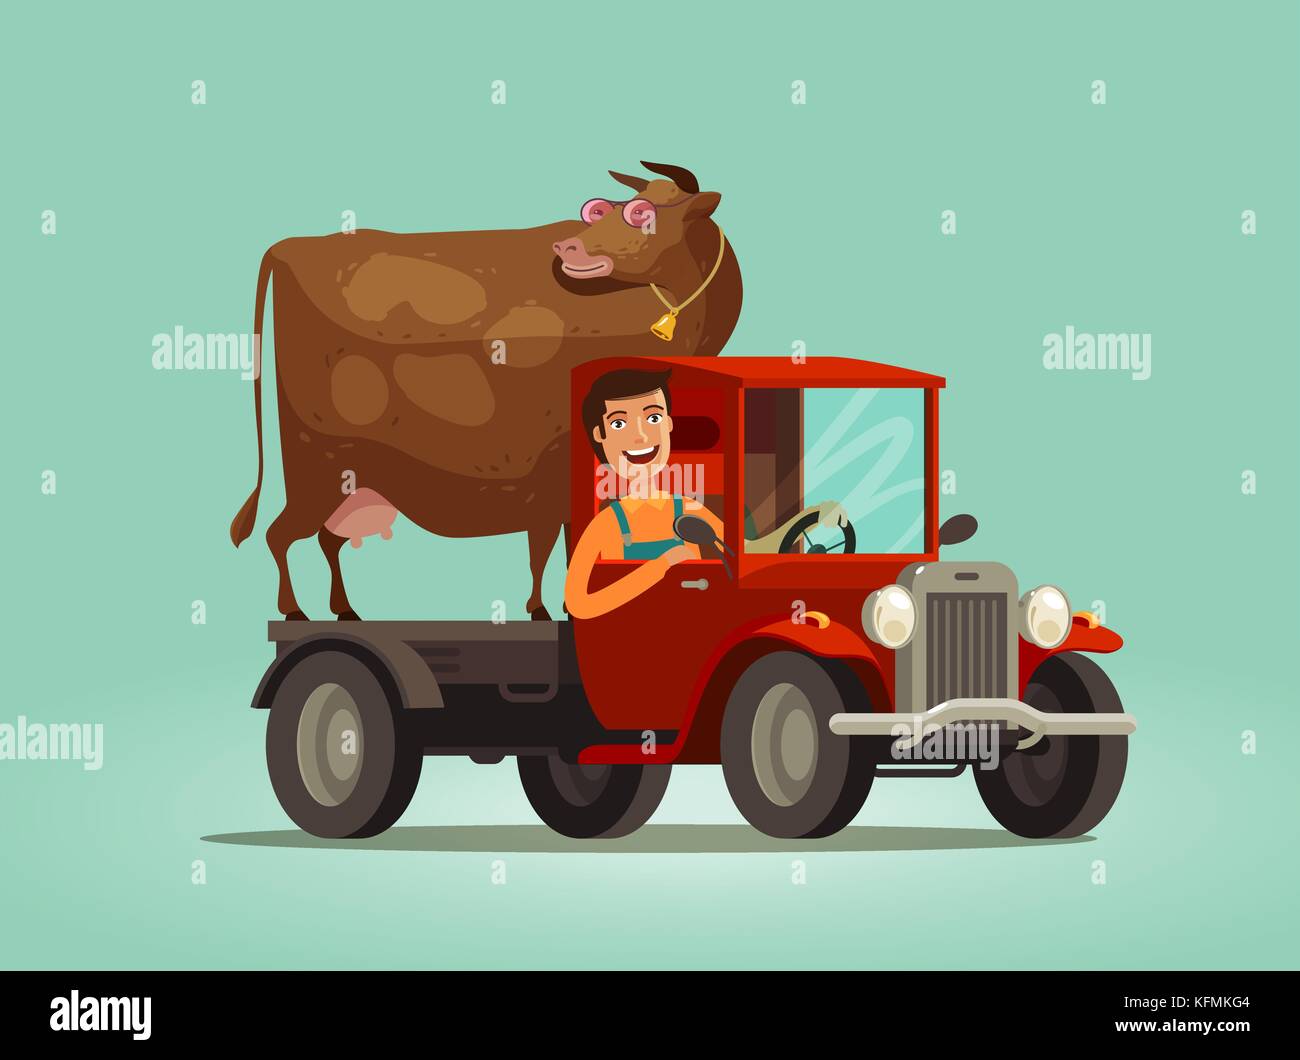 Glücklicher Bauer und Kuh fährt auf dem Truck. Landwirtschaft, Landwirtschaft, Agrarkonzept. Illustration des Zeichentrickvektors Stock Vektor